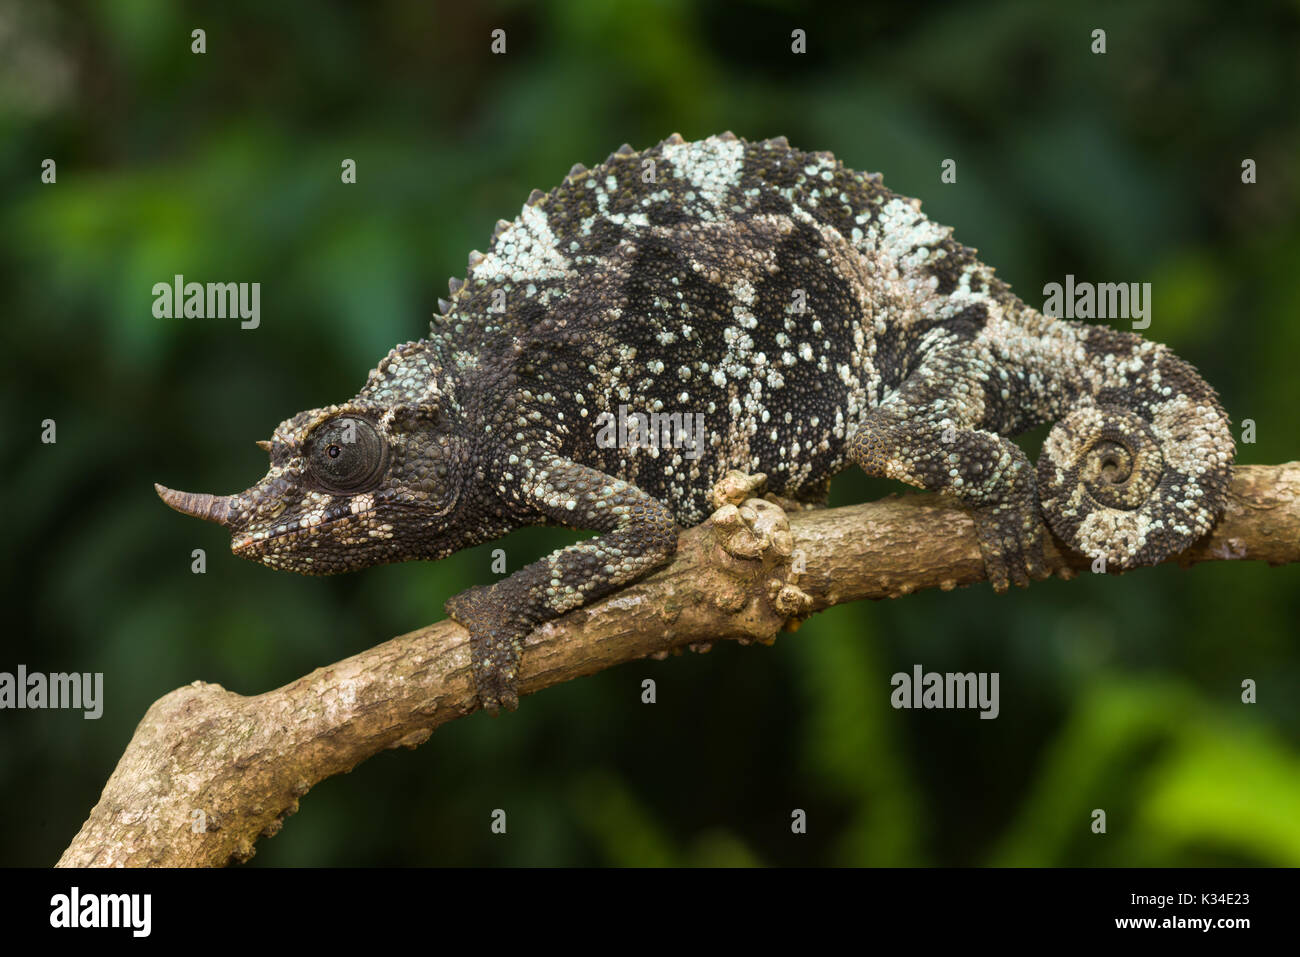 Female Jackson's chameleon (Trioceros jacksonii jacksonii) on branch, Nairobi, Kenya Stock Photo